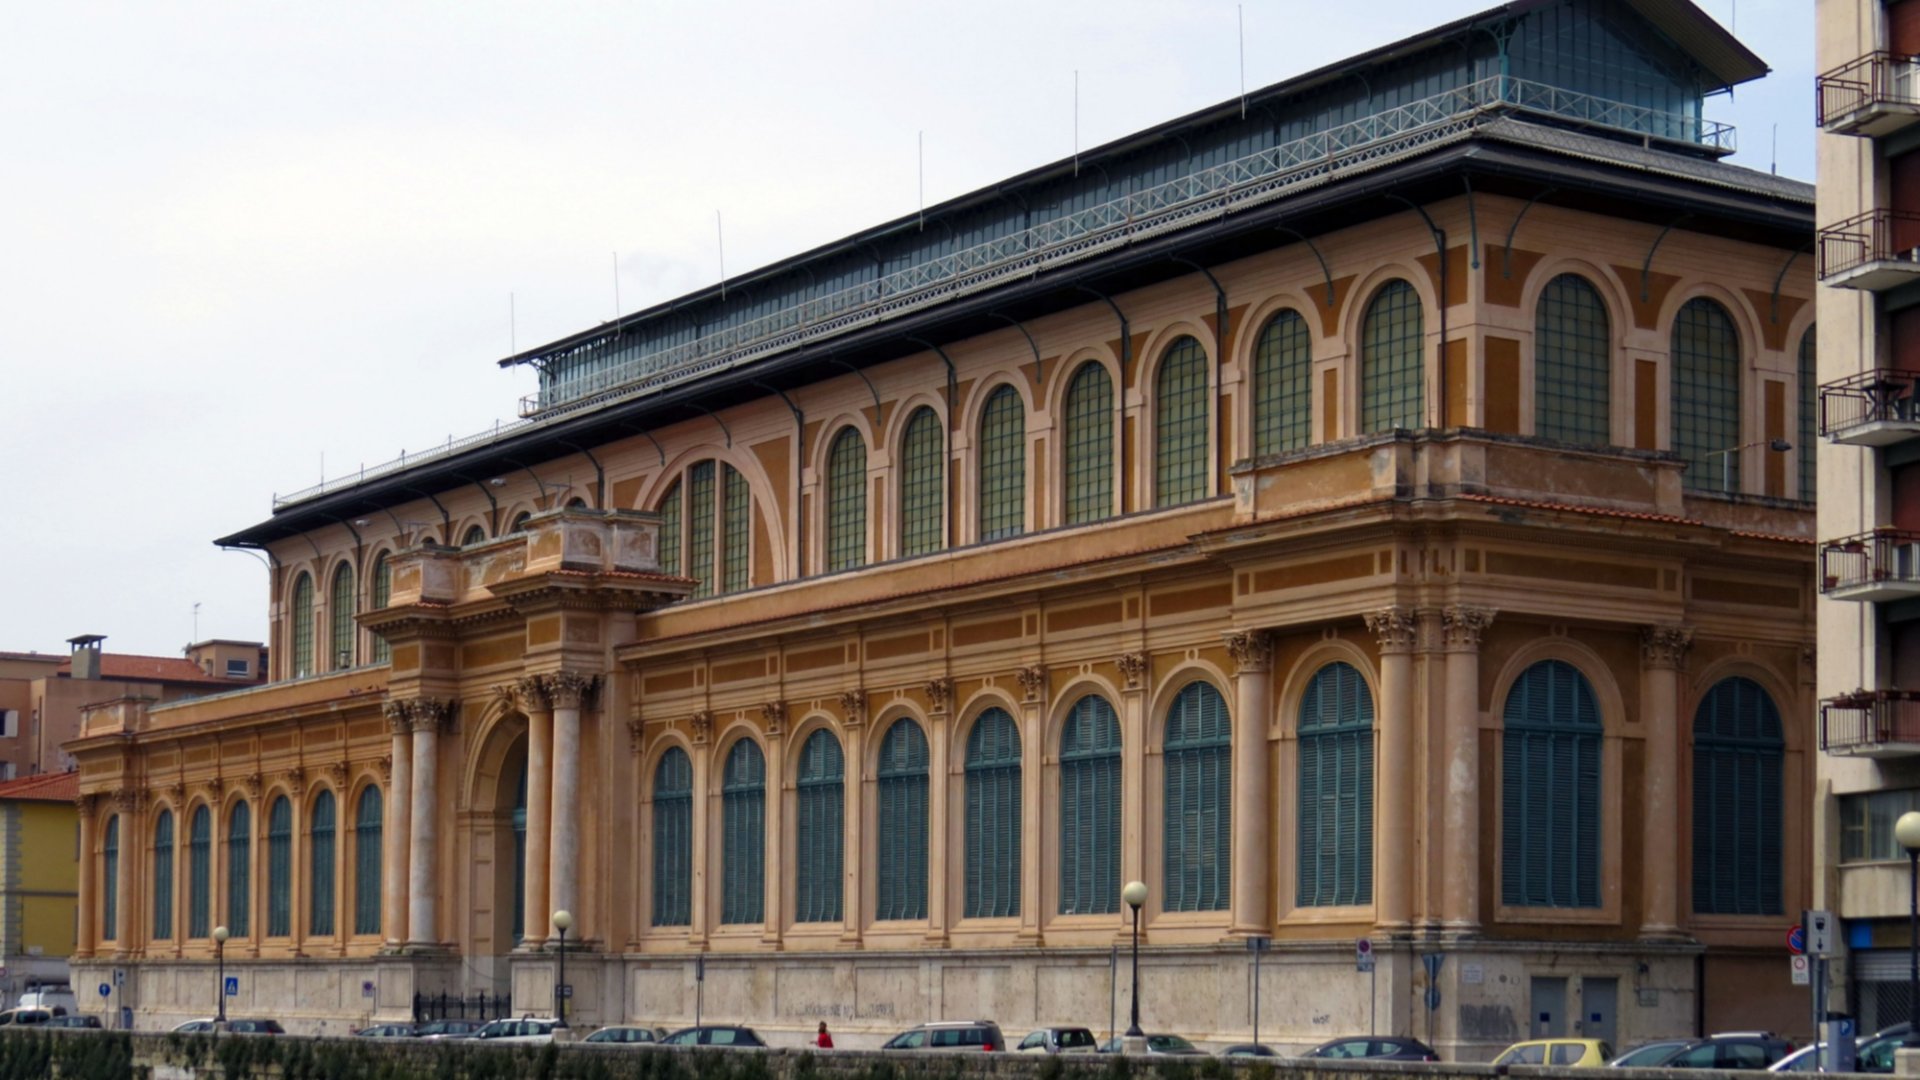 struttura ottocentesca in ferro e vetro